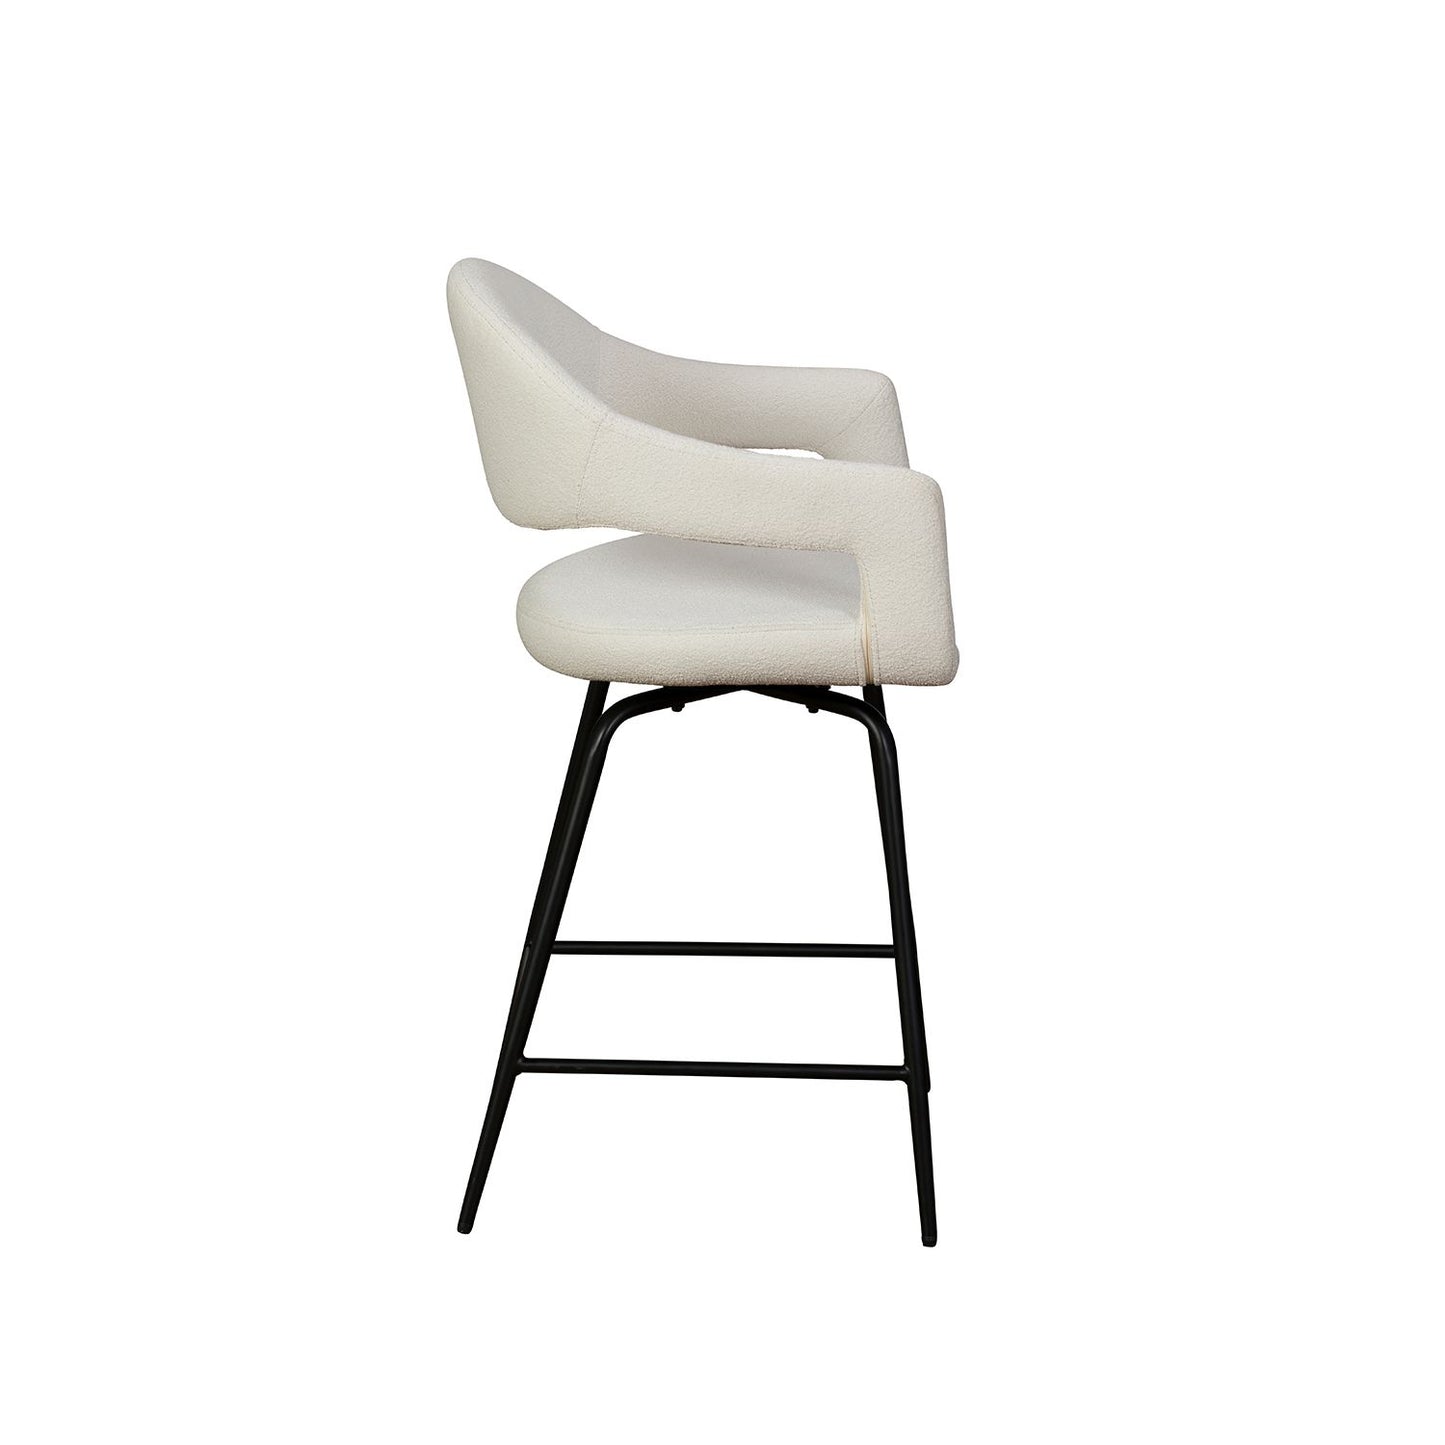 Chair - White